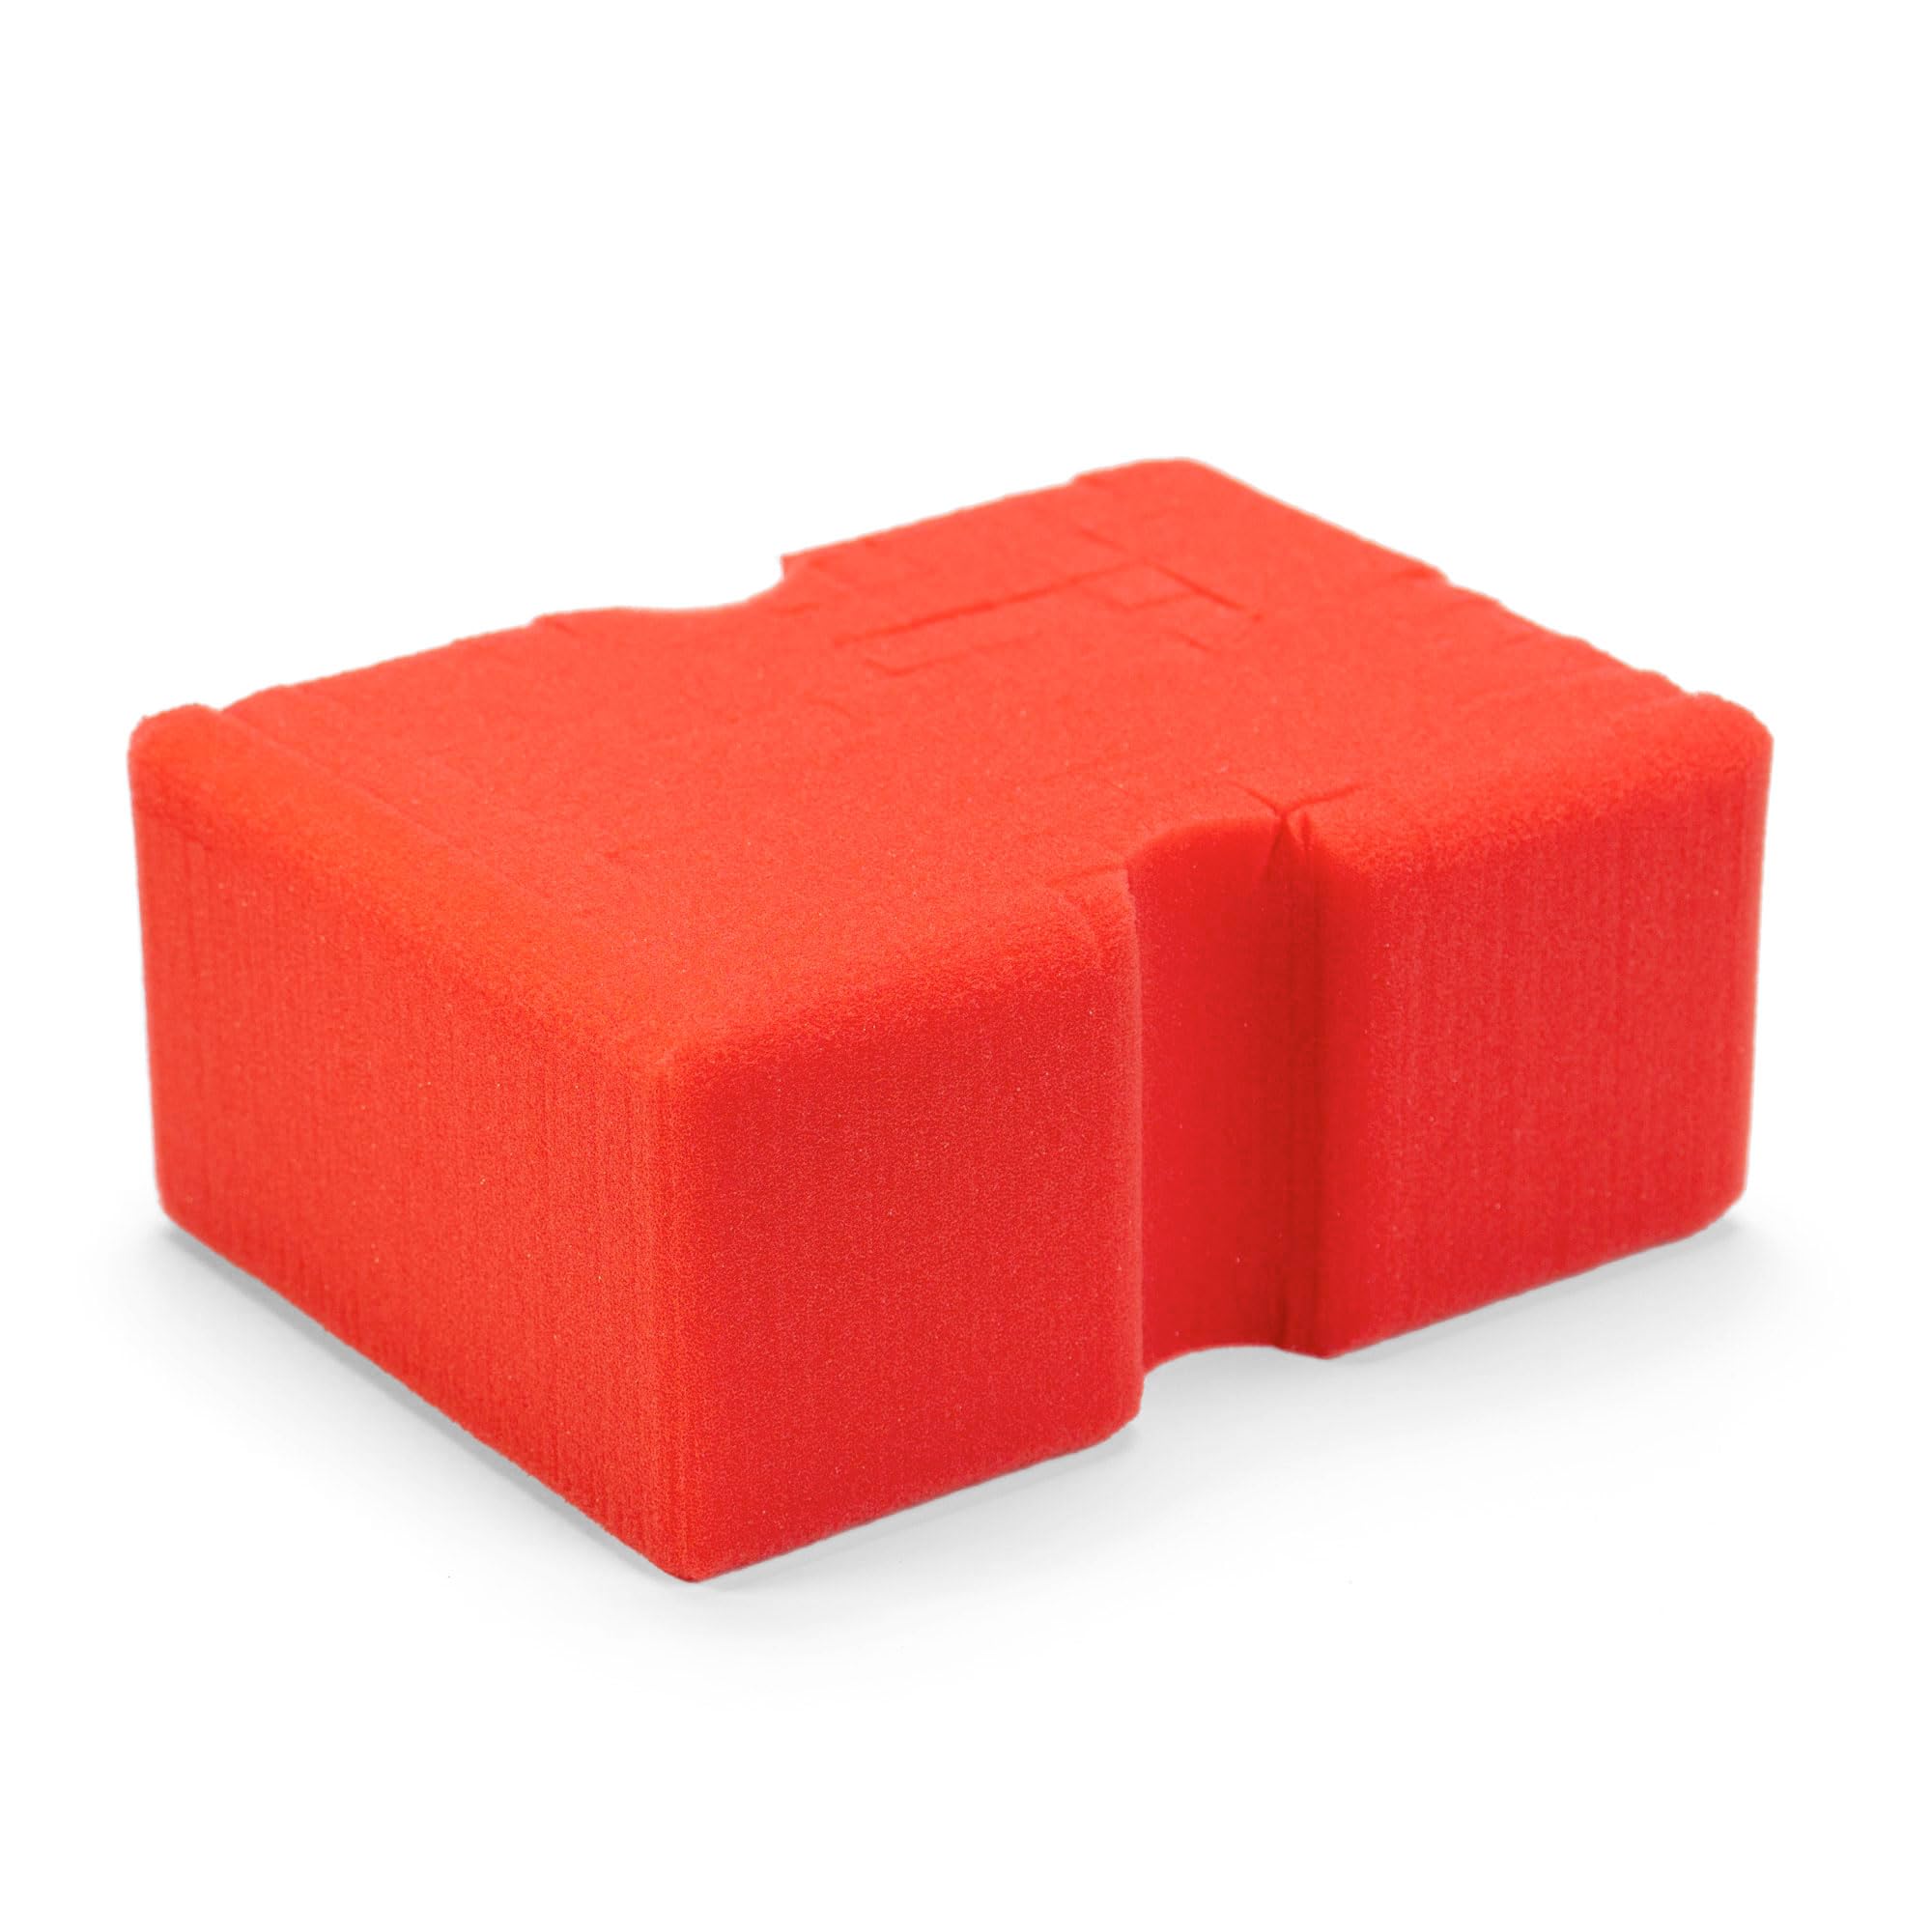 Optimum Big Red Sponge – Original BRS – großer Autowaschschwamm, professioneller Autopflege-Schwamm, ideal zur Verwendung mit spülmittelfreier Autowäsche und traditioneller Autowaschseife